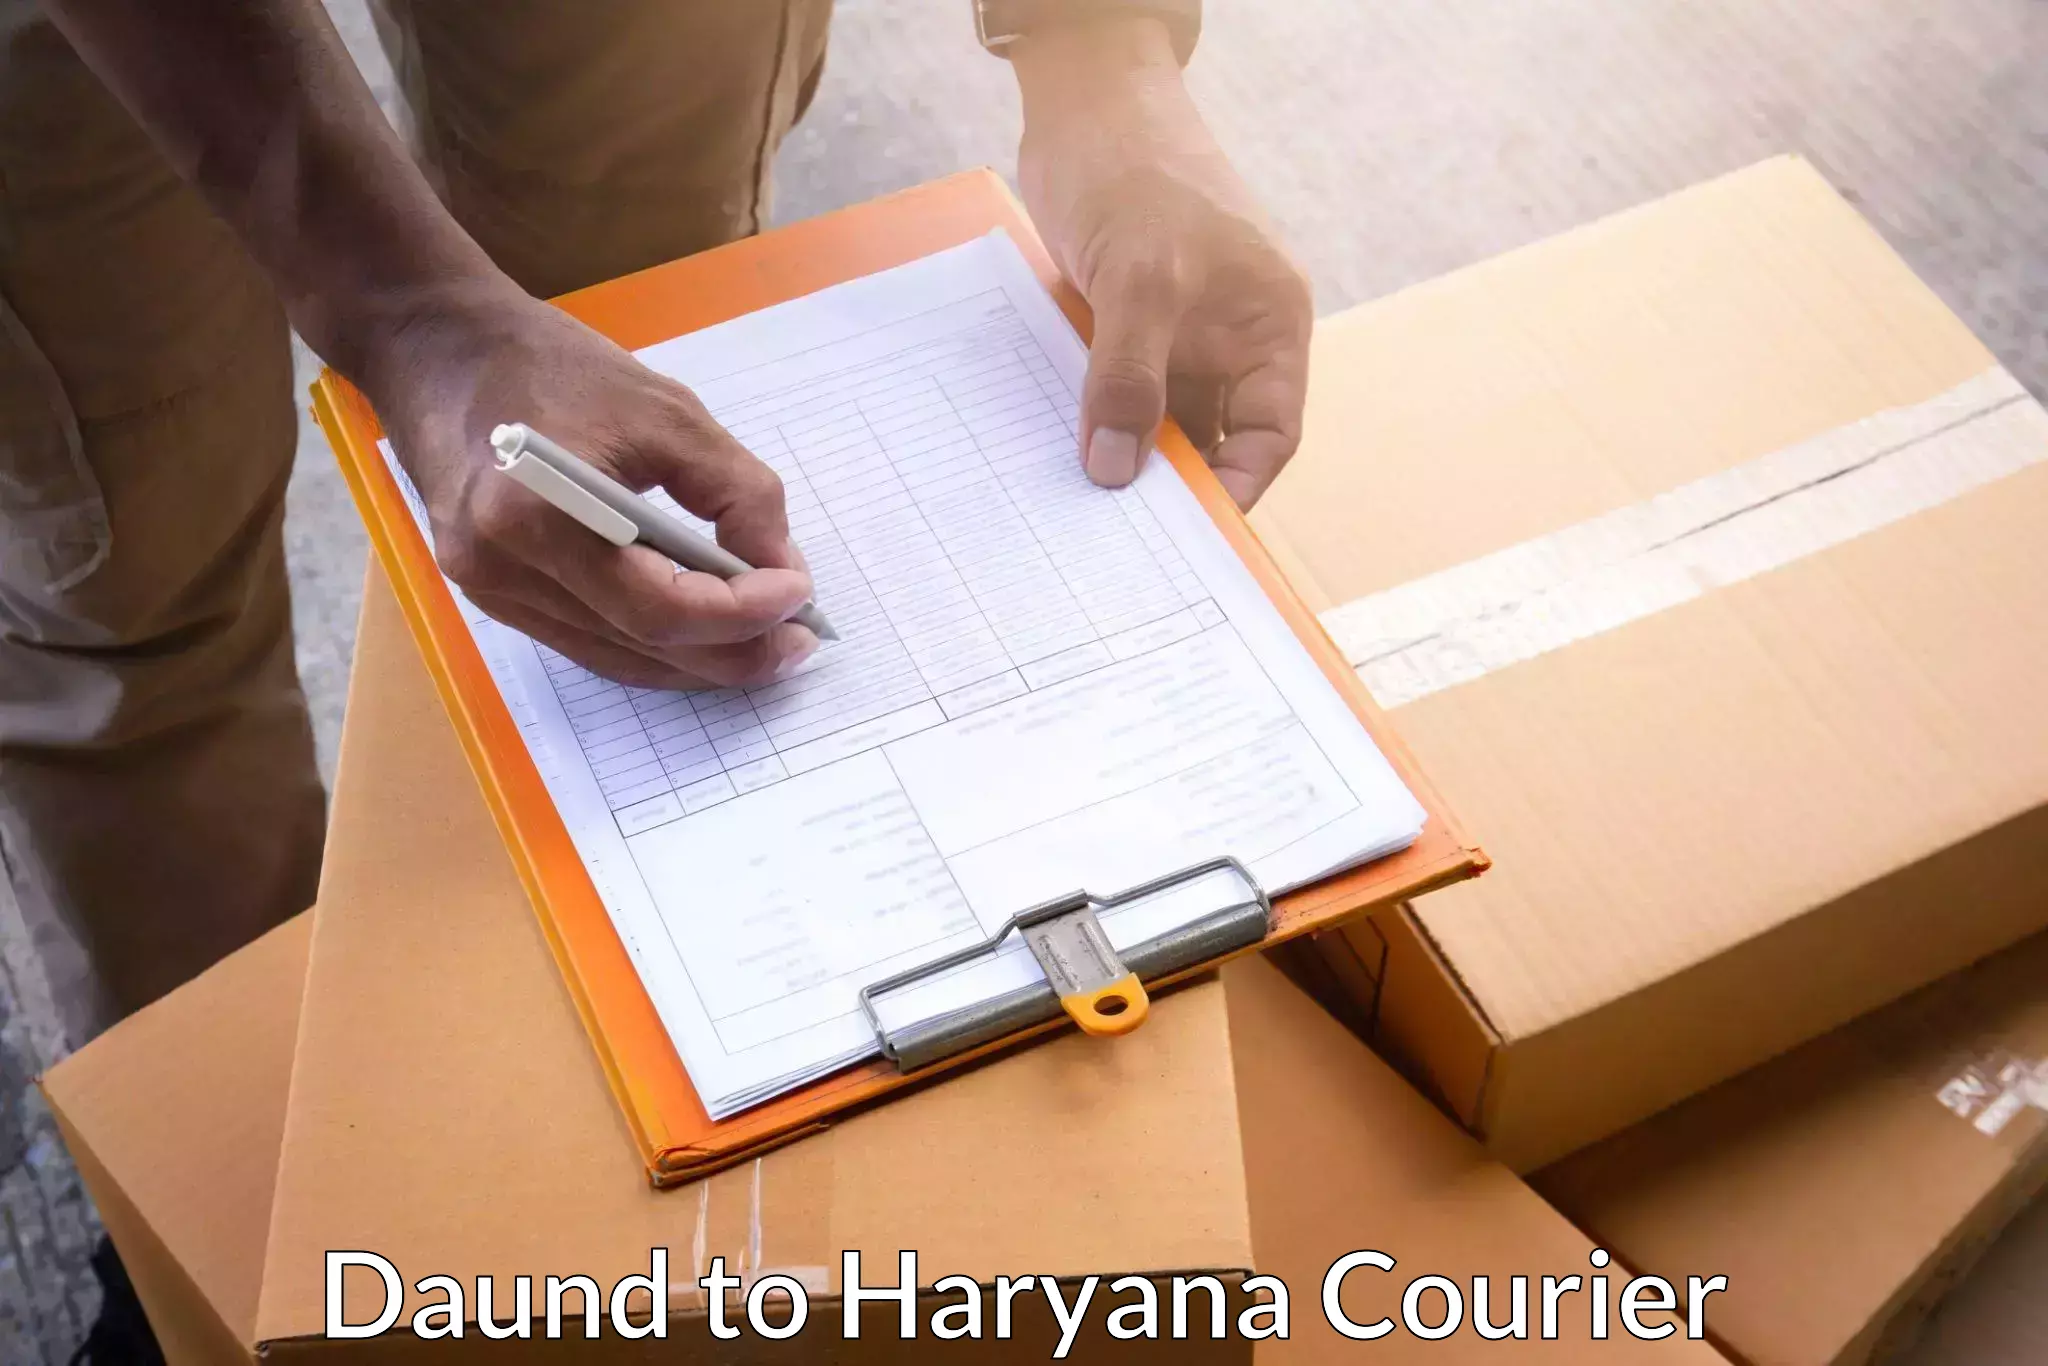 Express package transport Daund to Haryana